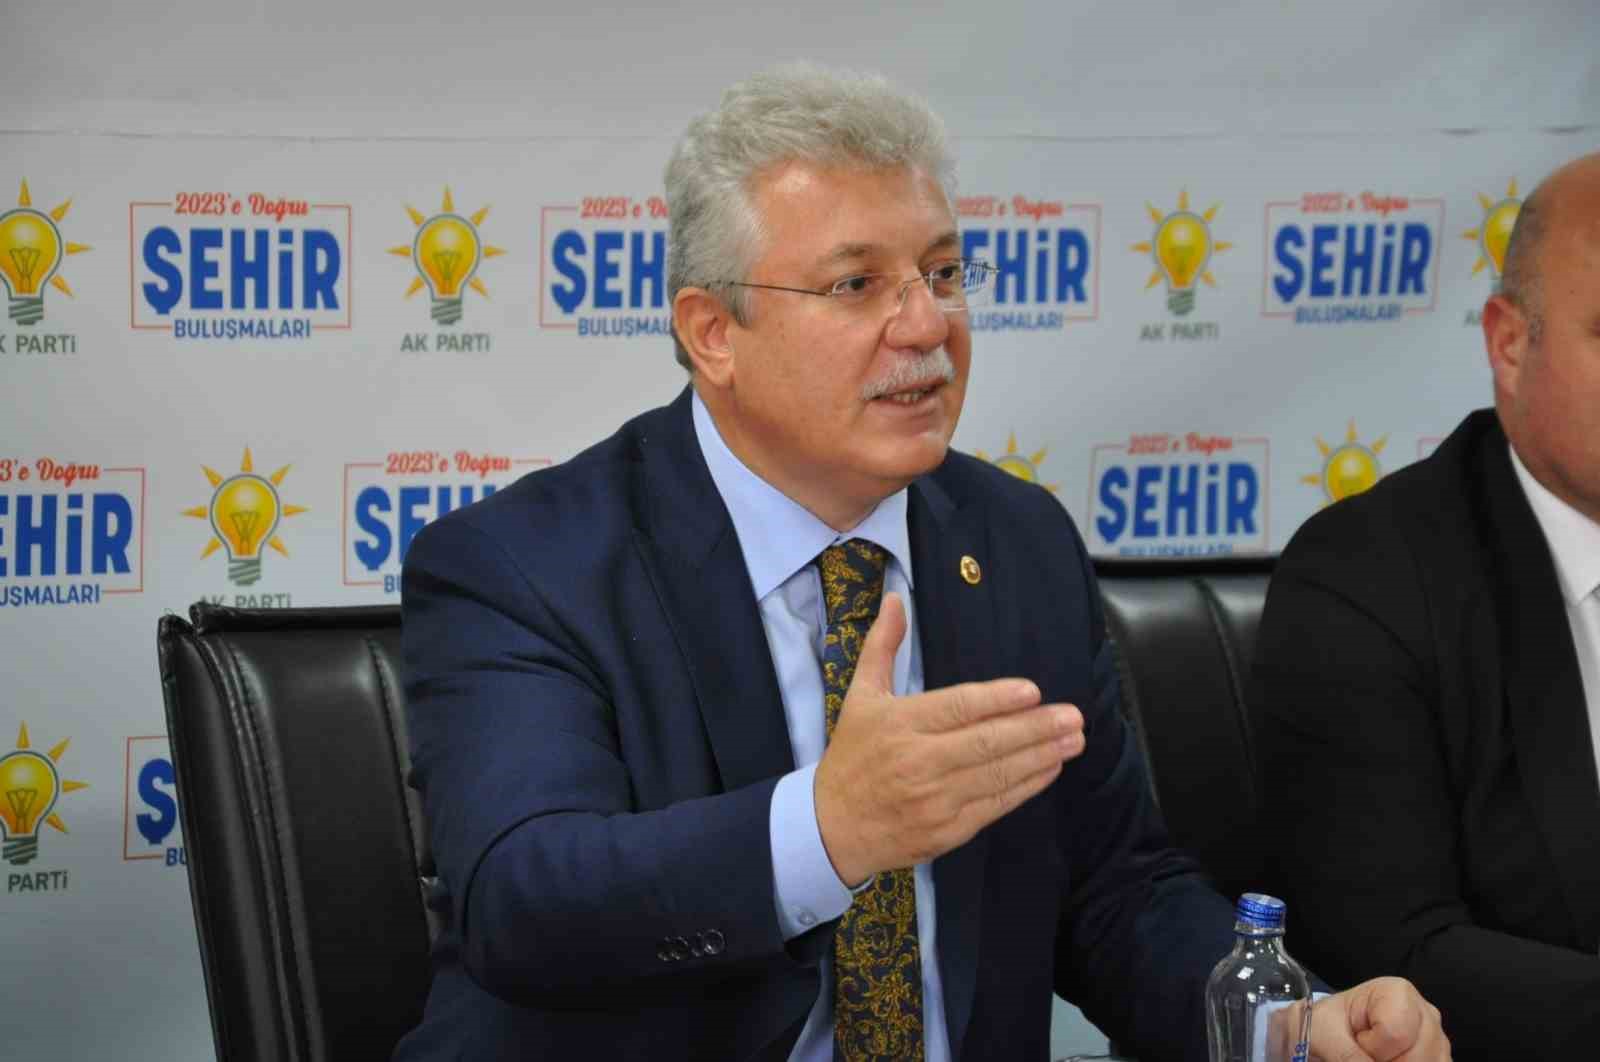 AK Parti Grup Başkan Vekili Akbaşoğlu: “Orta vadeli programın sonunda kişi başına düşen milli geliri 14-15 bin dolarlara çıkaracağız”